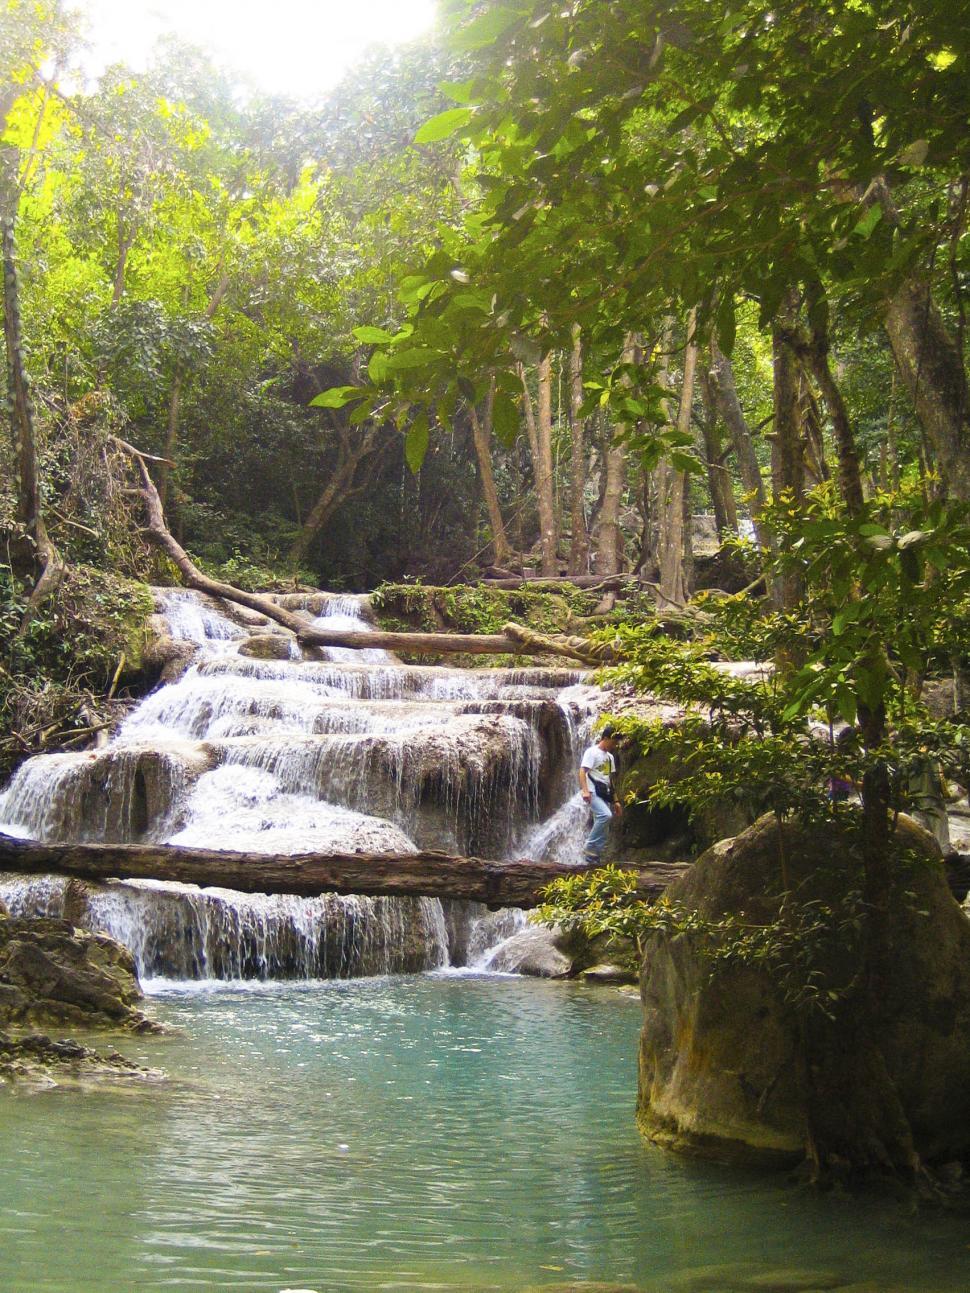 Free Image of River waterfalls 